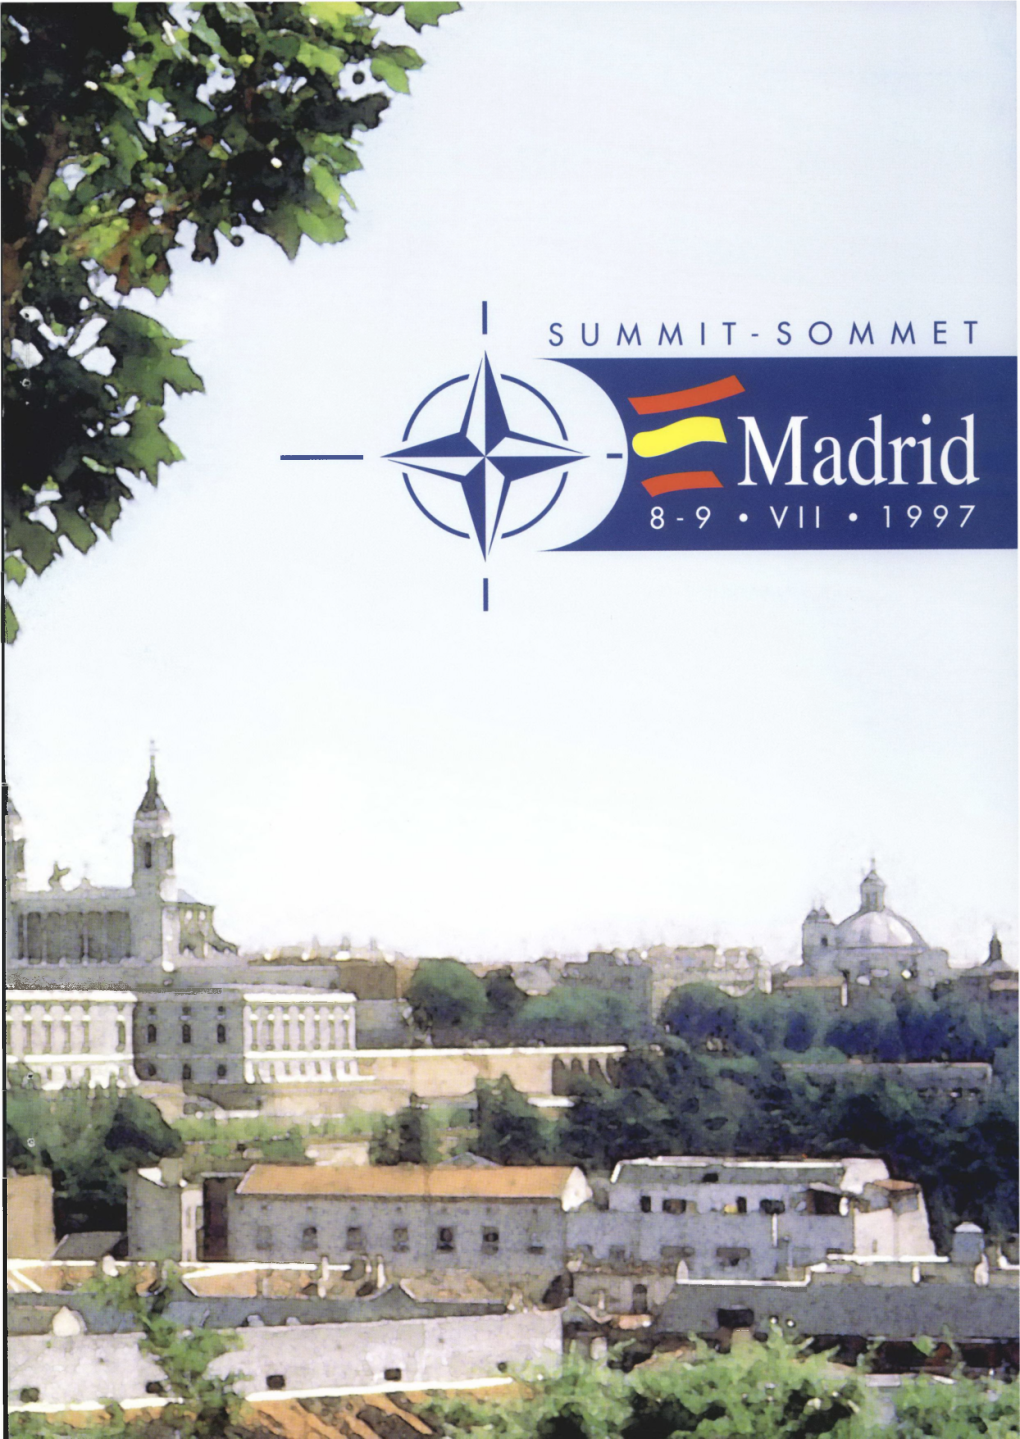 Summit Madrid Press Info 1997